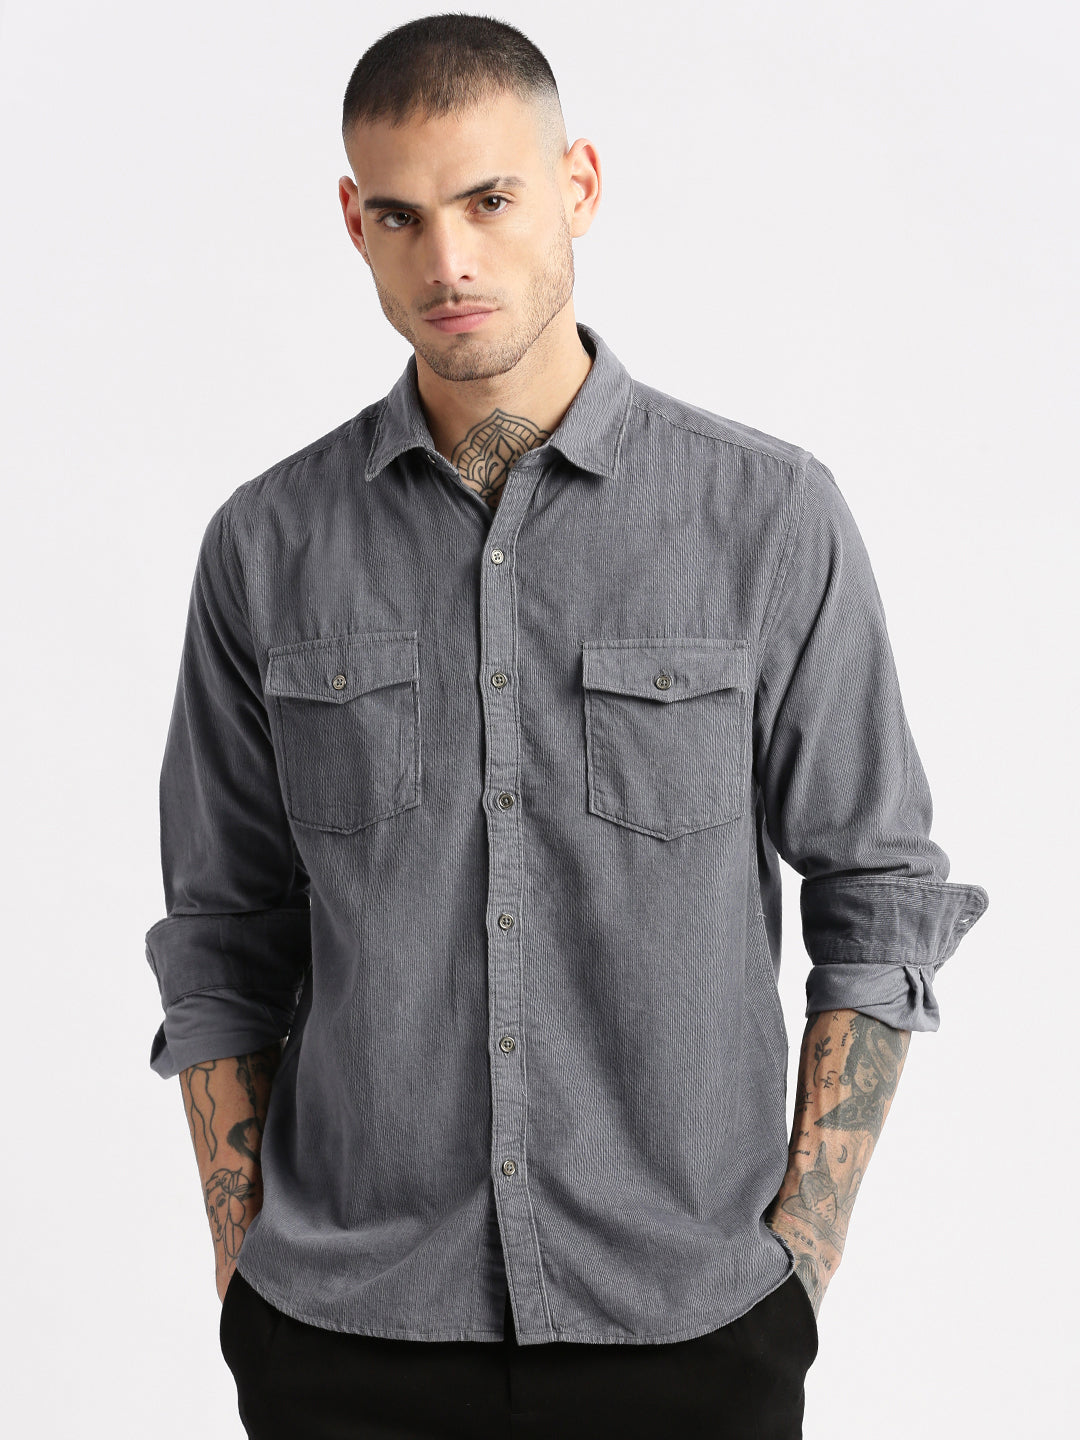 Men Spread Collar Corduroy Solid Grey Casual Shirt